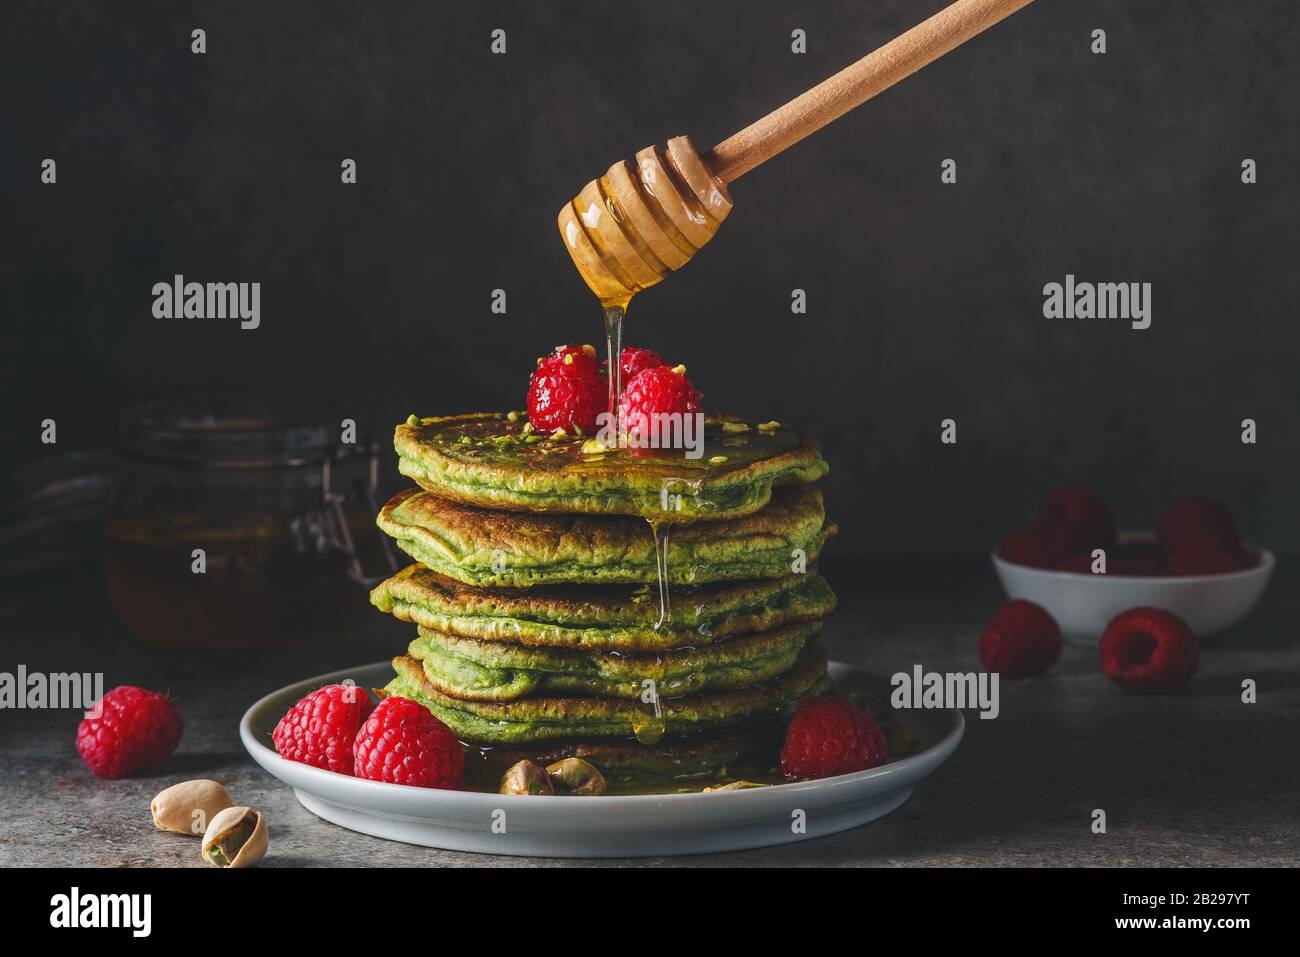 Matcha-Grünpfannkuchen mit frischen Himbeeren, Pistazien und fließendem Honig auf dunklem Hintergrund. Low Key. Gesundes Frühstücksdessert. Vintage-Tönung Stockfoto